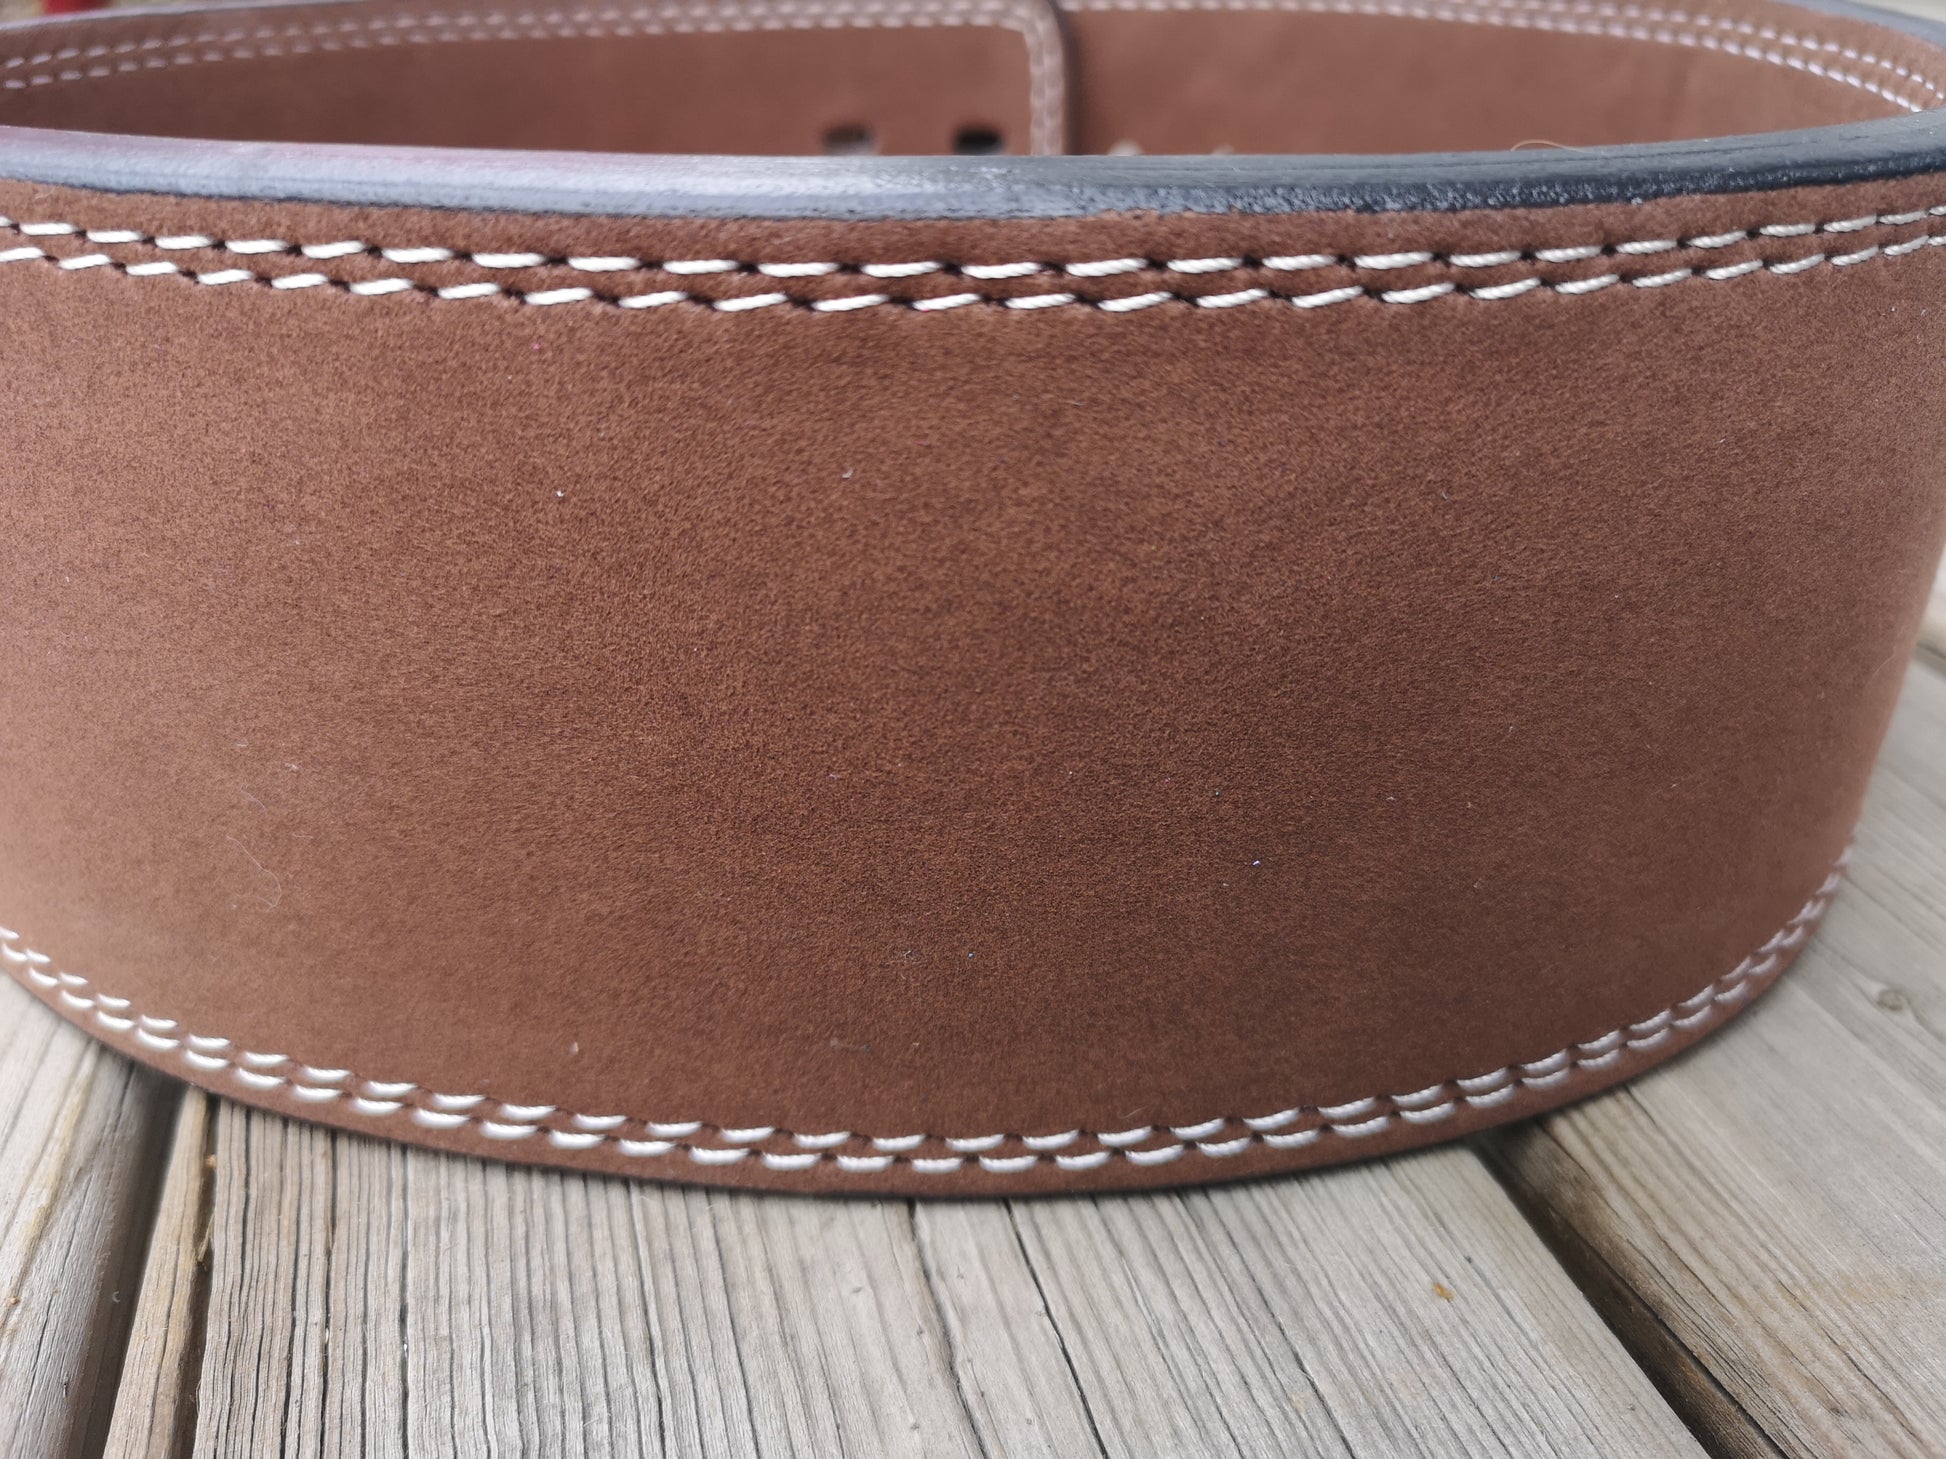 EASY ORDER: Custom Brown Belt - Resolute Strength Wear